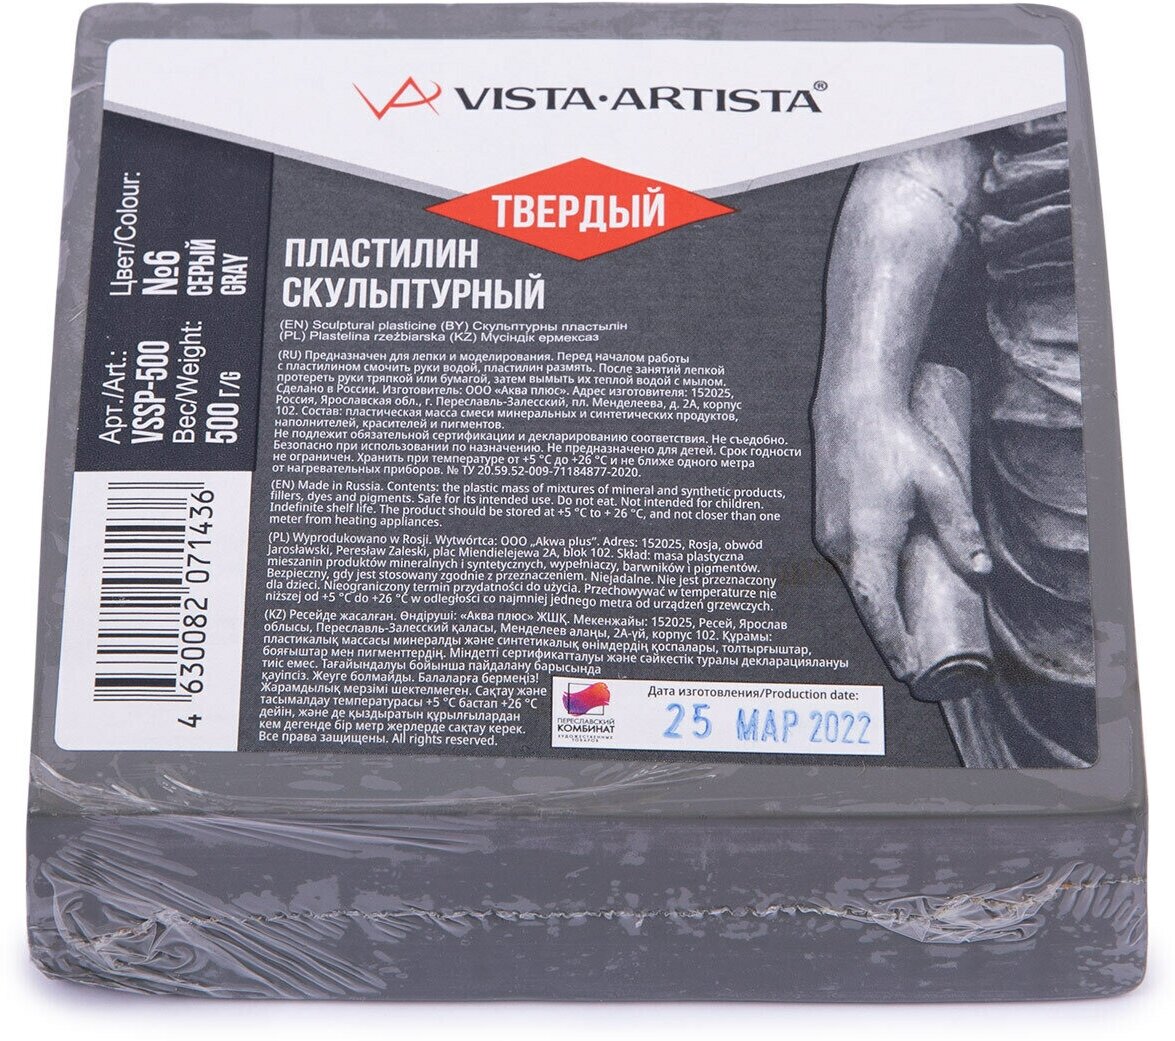 Пластилин скульптурный VISTA-ARTISTA VSSP-500 Studio 0.5 кг №6 серый твердый